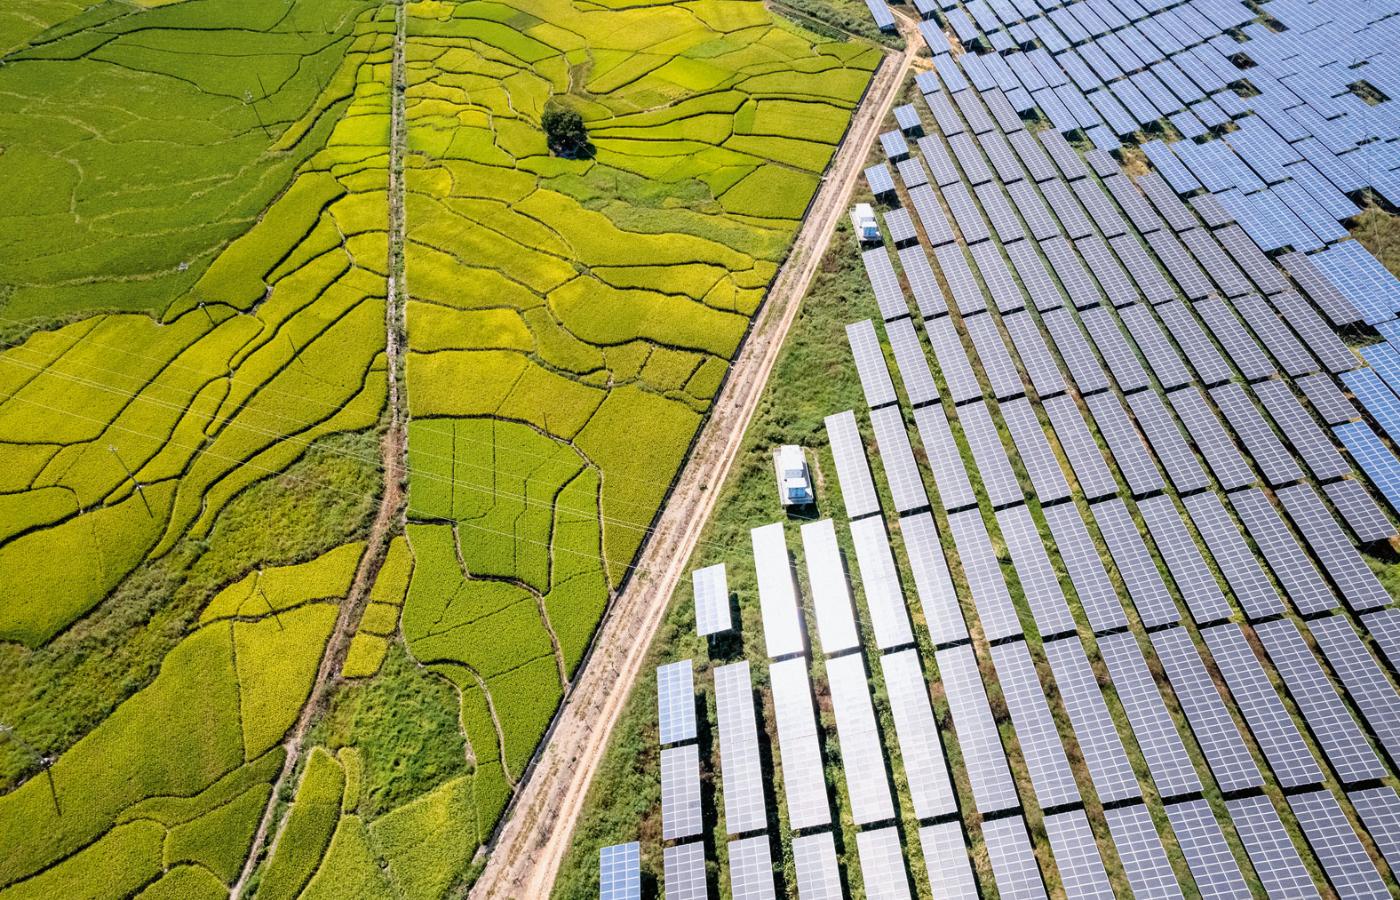 Chiny dominują dziś w zielonych biznesach. Tamtejsze fabryki wytwarzają 80 proc. paneli słonecznych. Na fot. farma w prowincji Fujian.